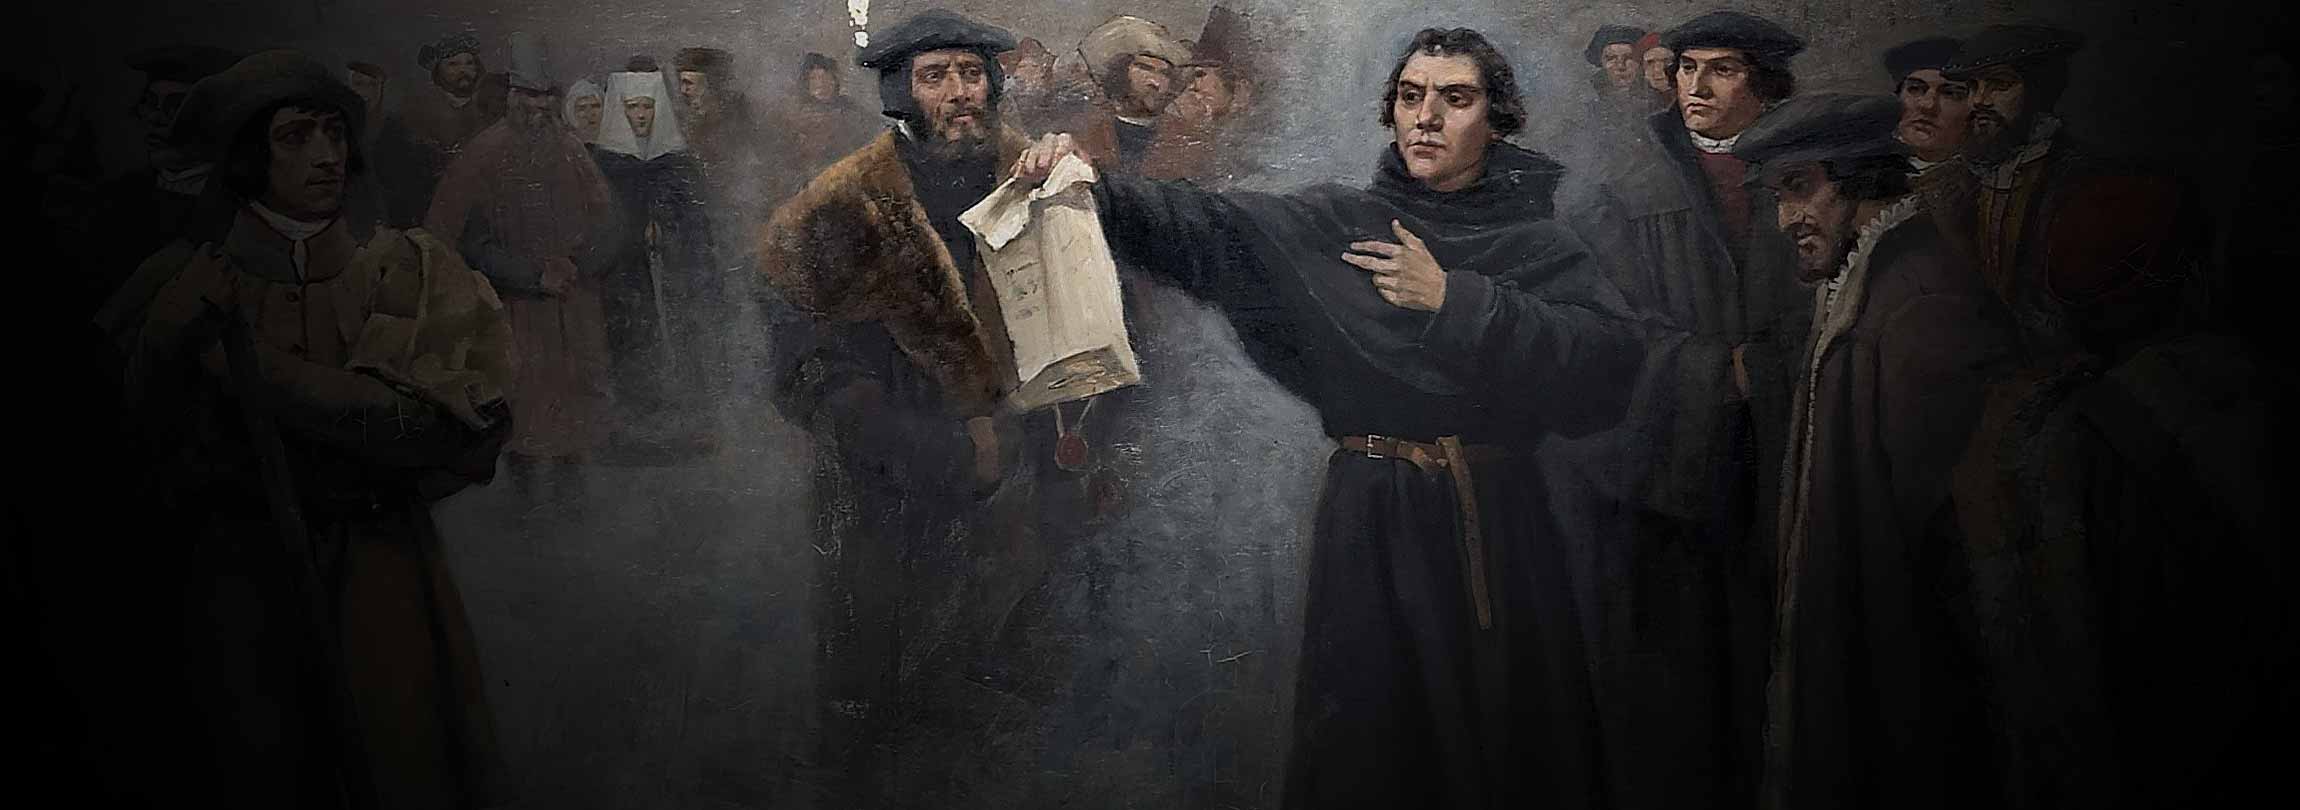 Com que direito Lutero pretendia “reformar” a Igreja?